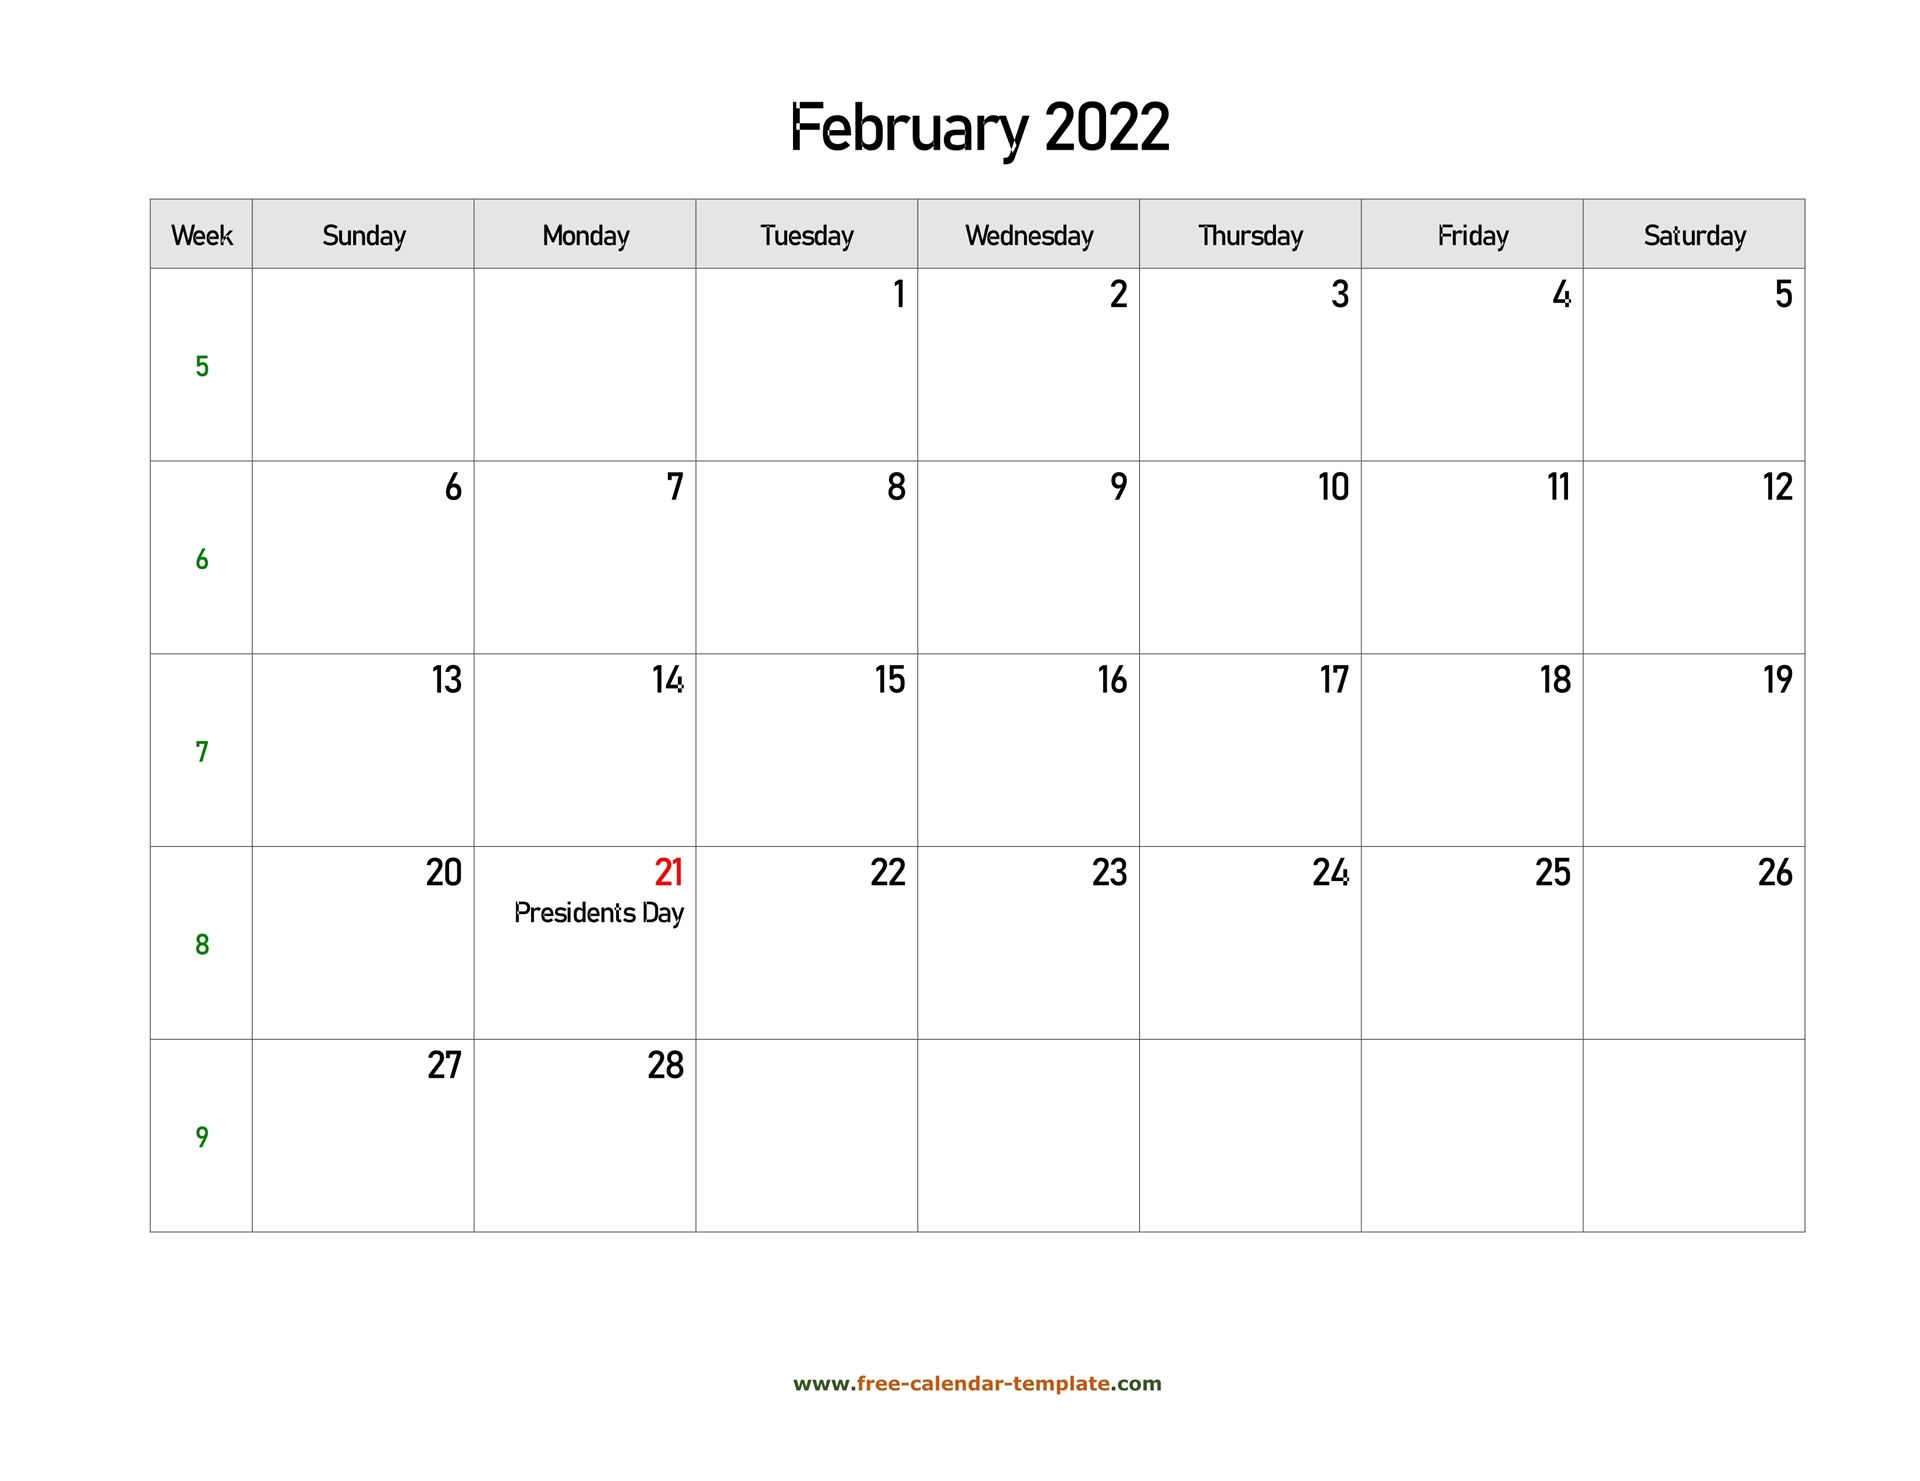 Catch Free Calendar For February 2022